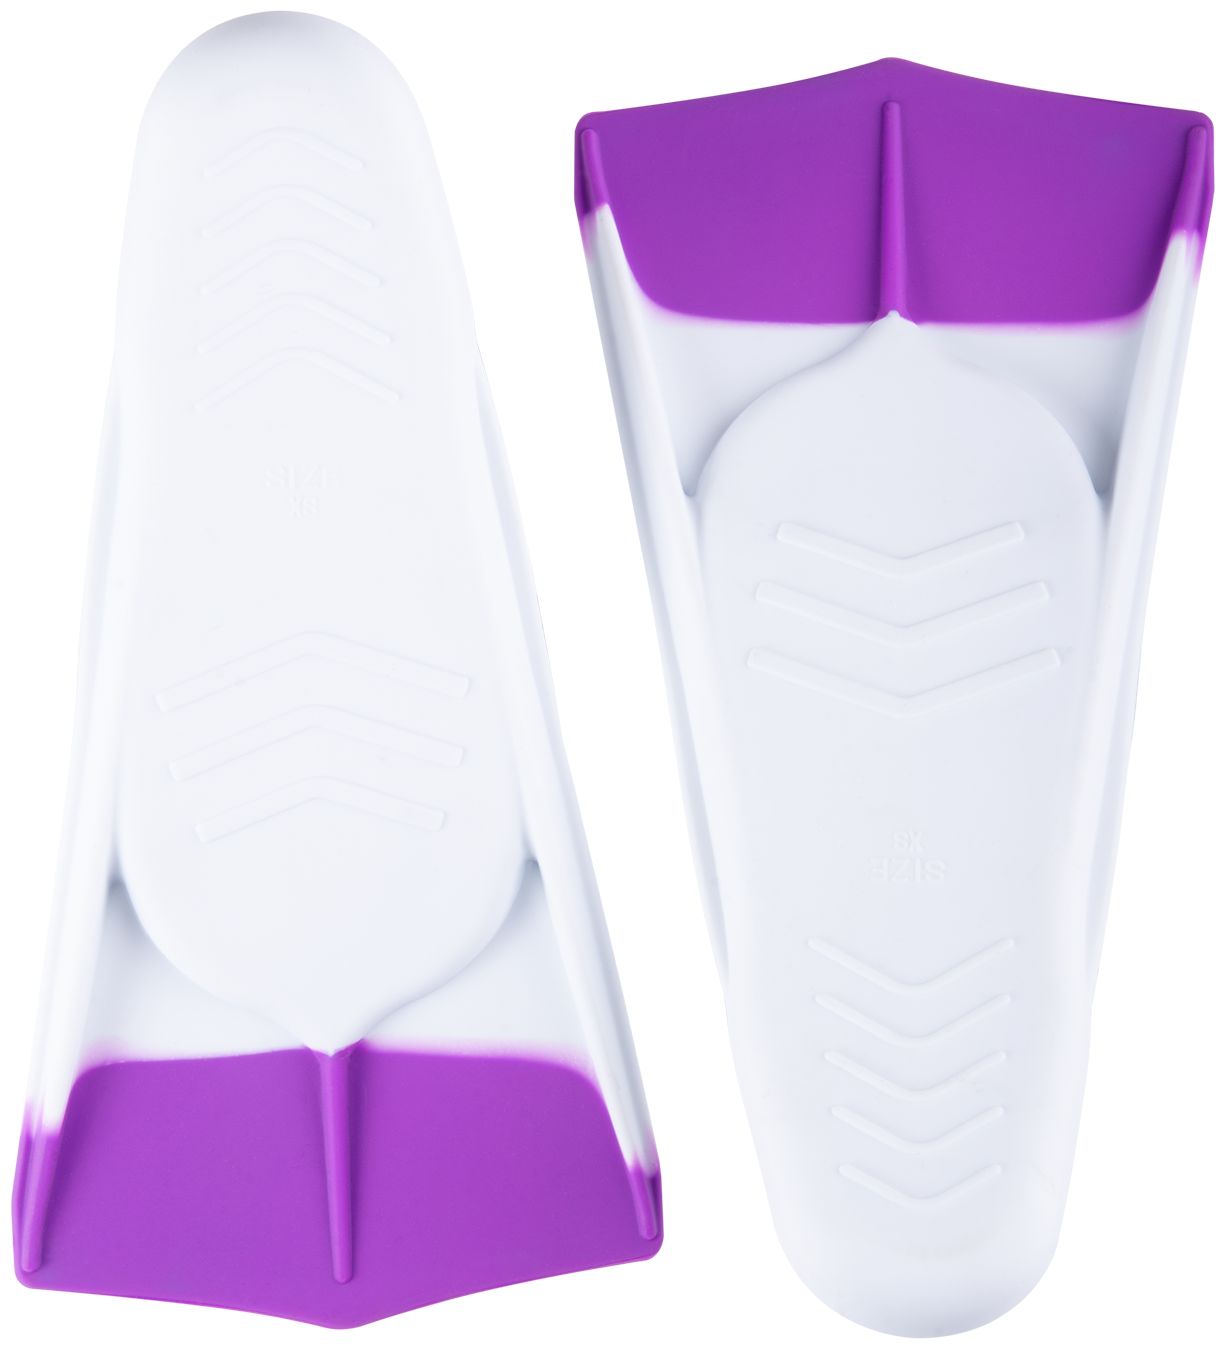 Ласты тренировочные 25DEGREES Pooljet White/Purple 25D21001, S (33-35)